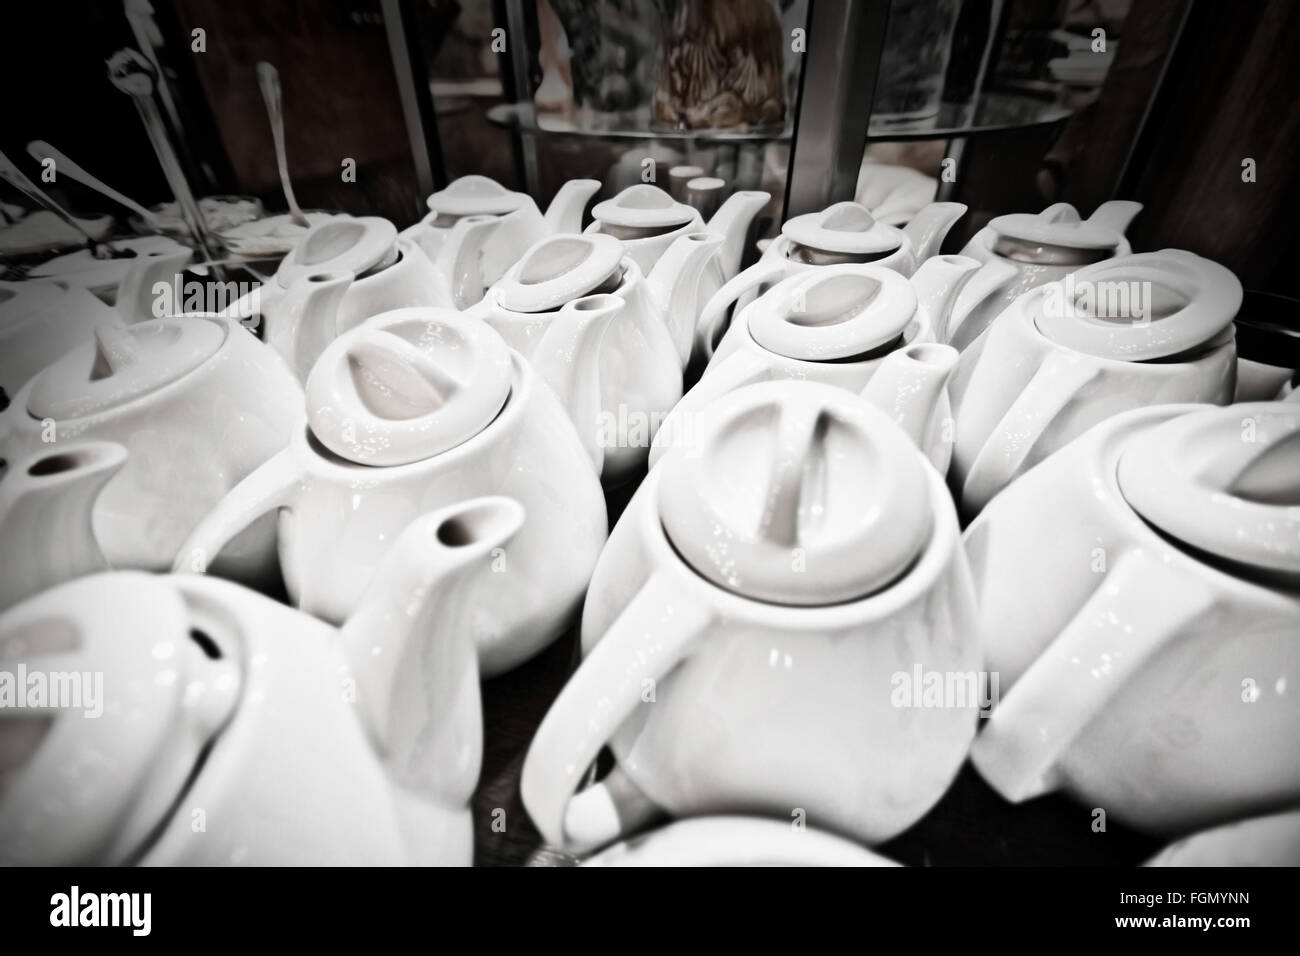 Eine Menge von Teekannen in der Cafeteria. Speisen und Getränke Konzeptbild. Stockfoto